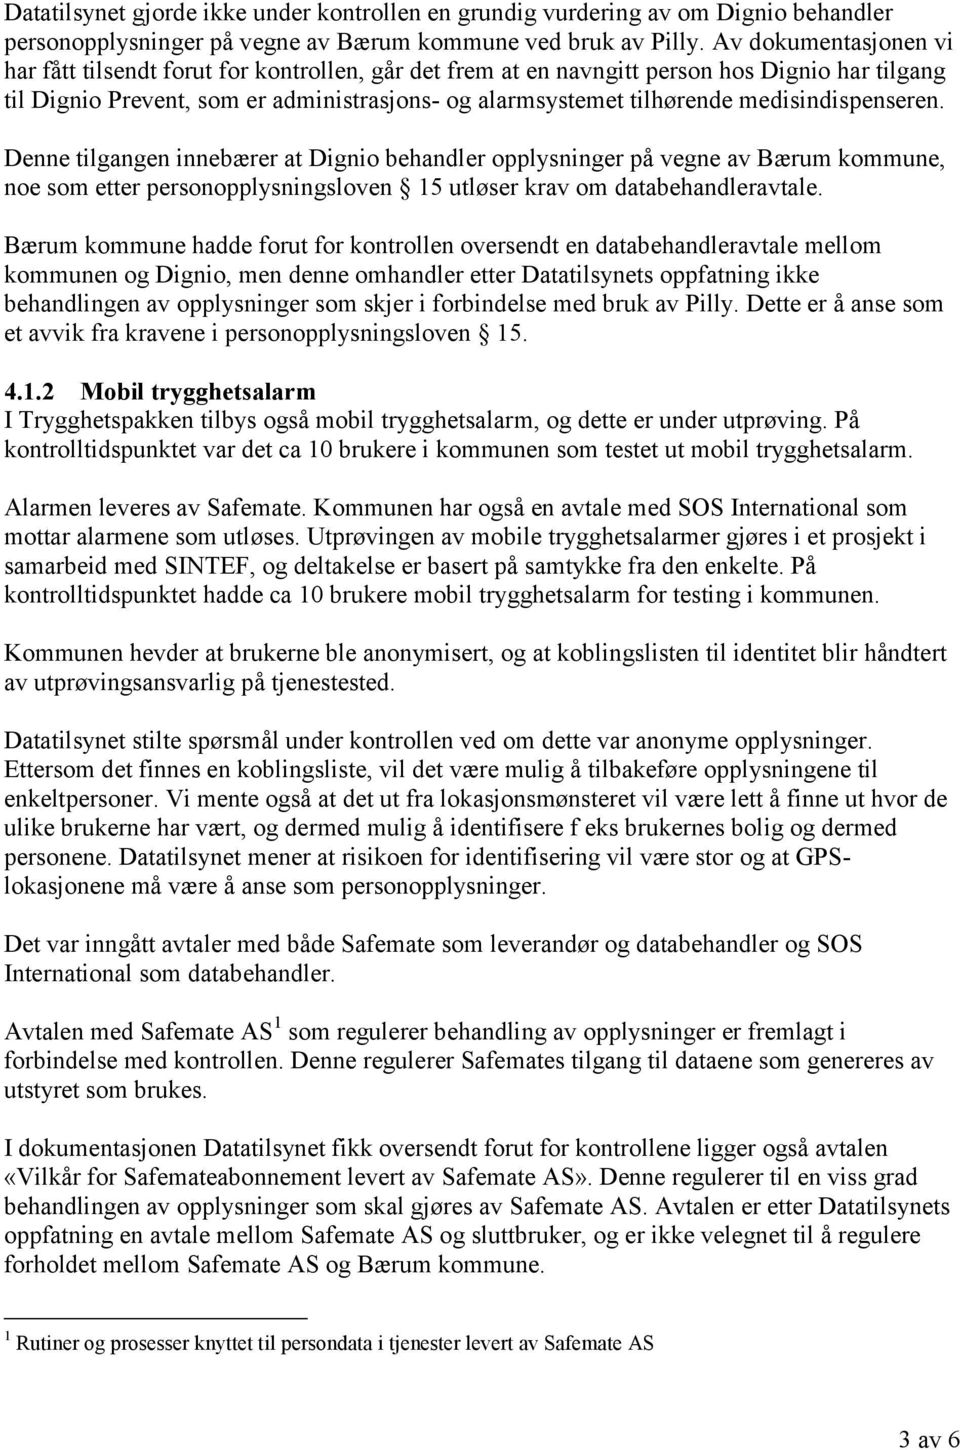 medisindispenseren. Denne tilgangen innebærer at Dignio behandler opplysninger på vegne av Bærum kommune, noe som etter personopplysningsloven 15 utløser krav om databehandleravtale.